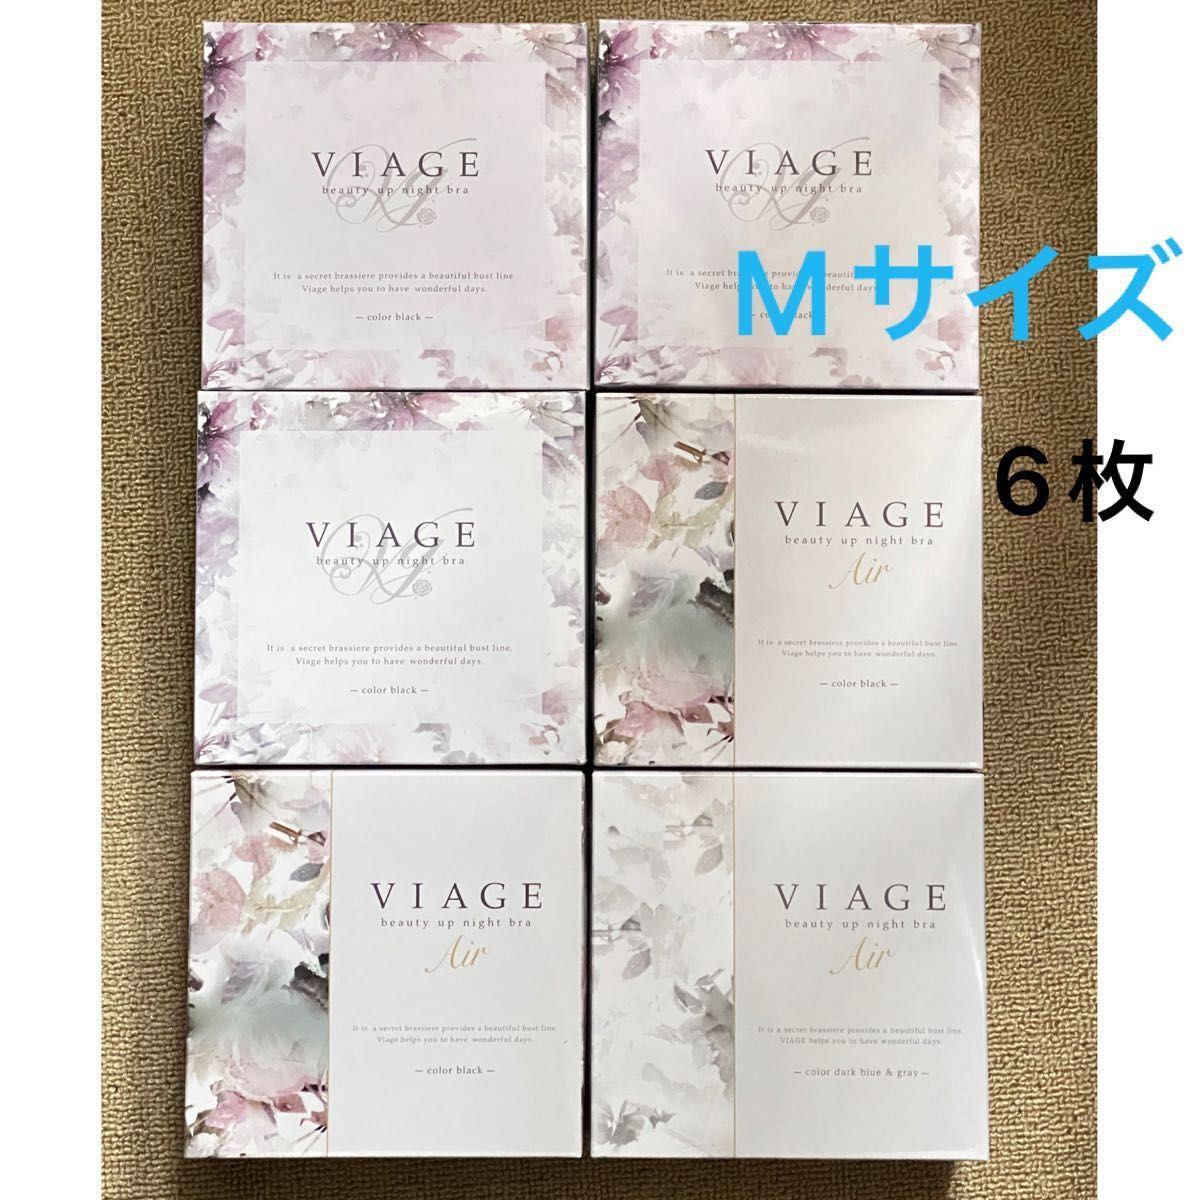 VIAGE ナイトブラ Mサイズ 6枚セット レディースファッション